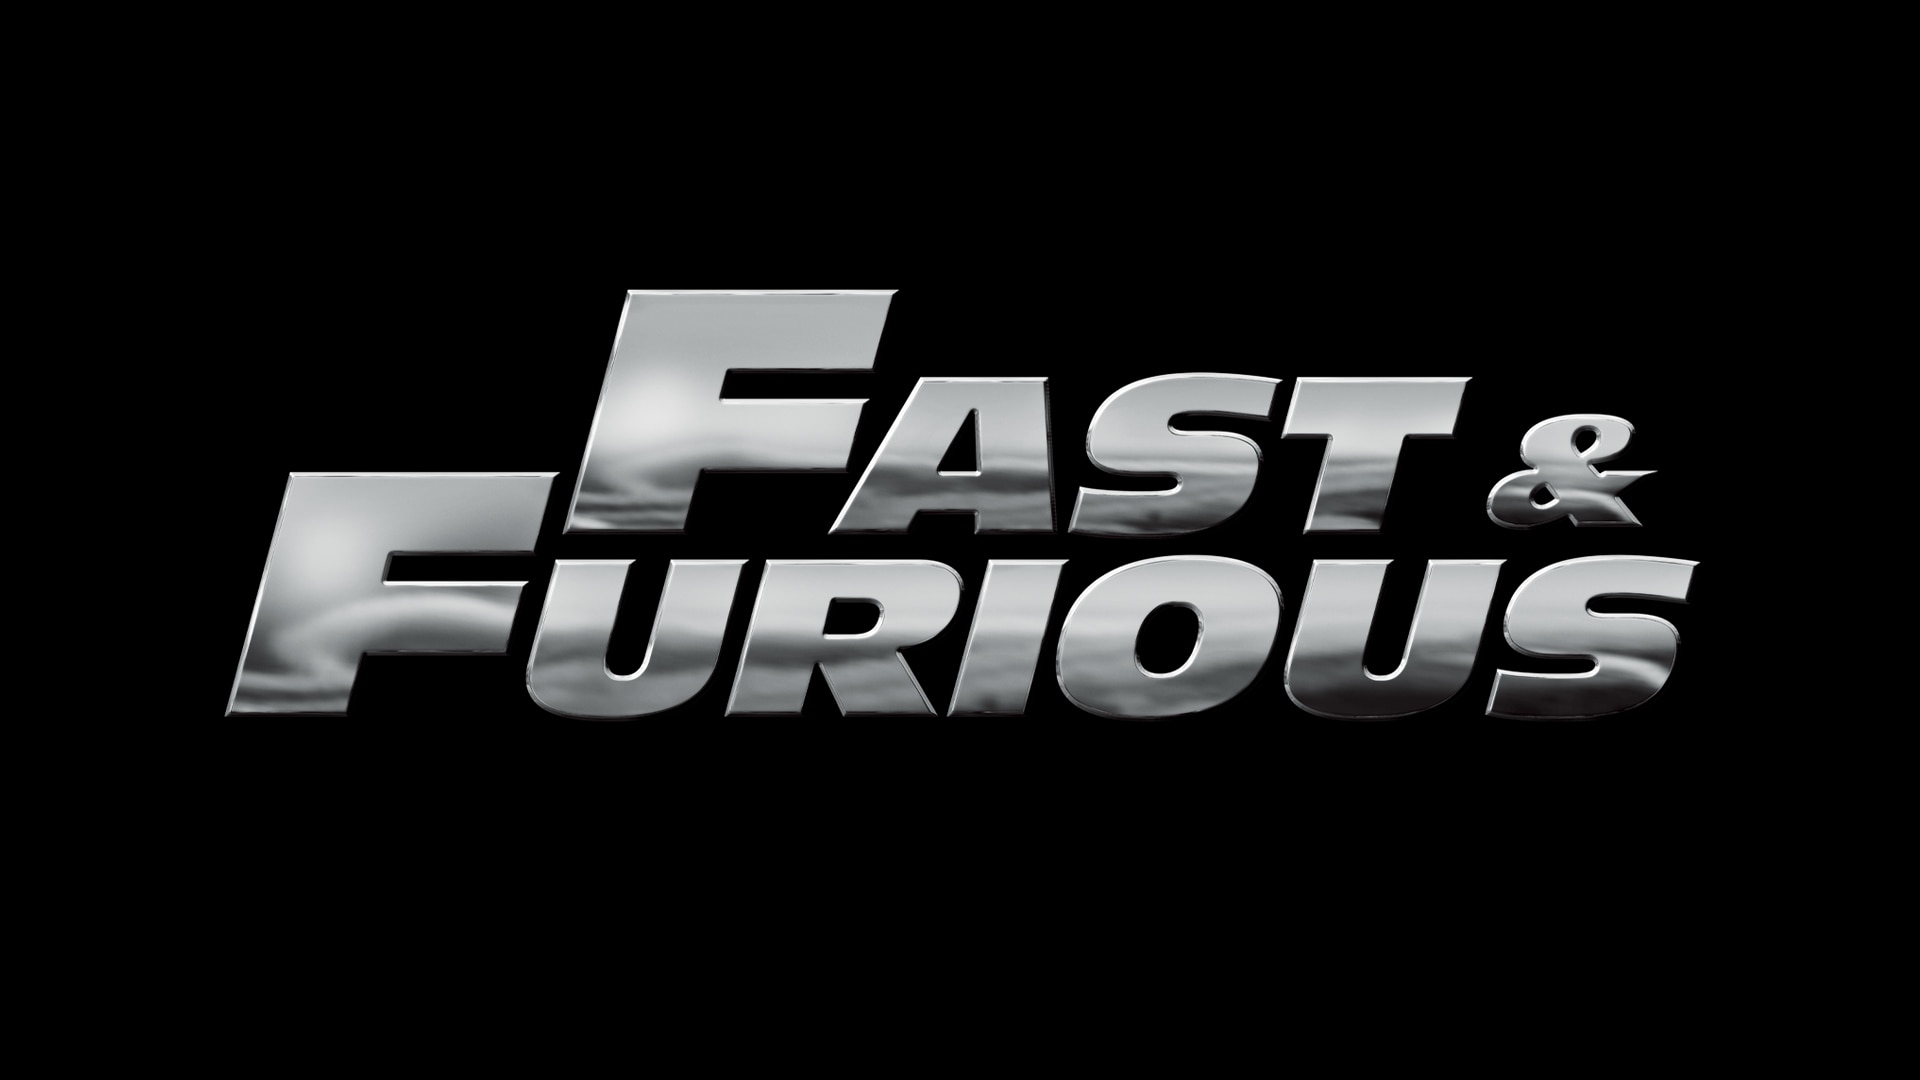  Fast  Furious  NBC com